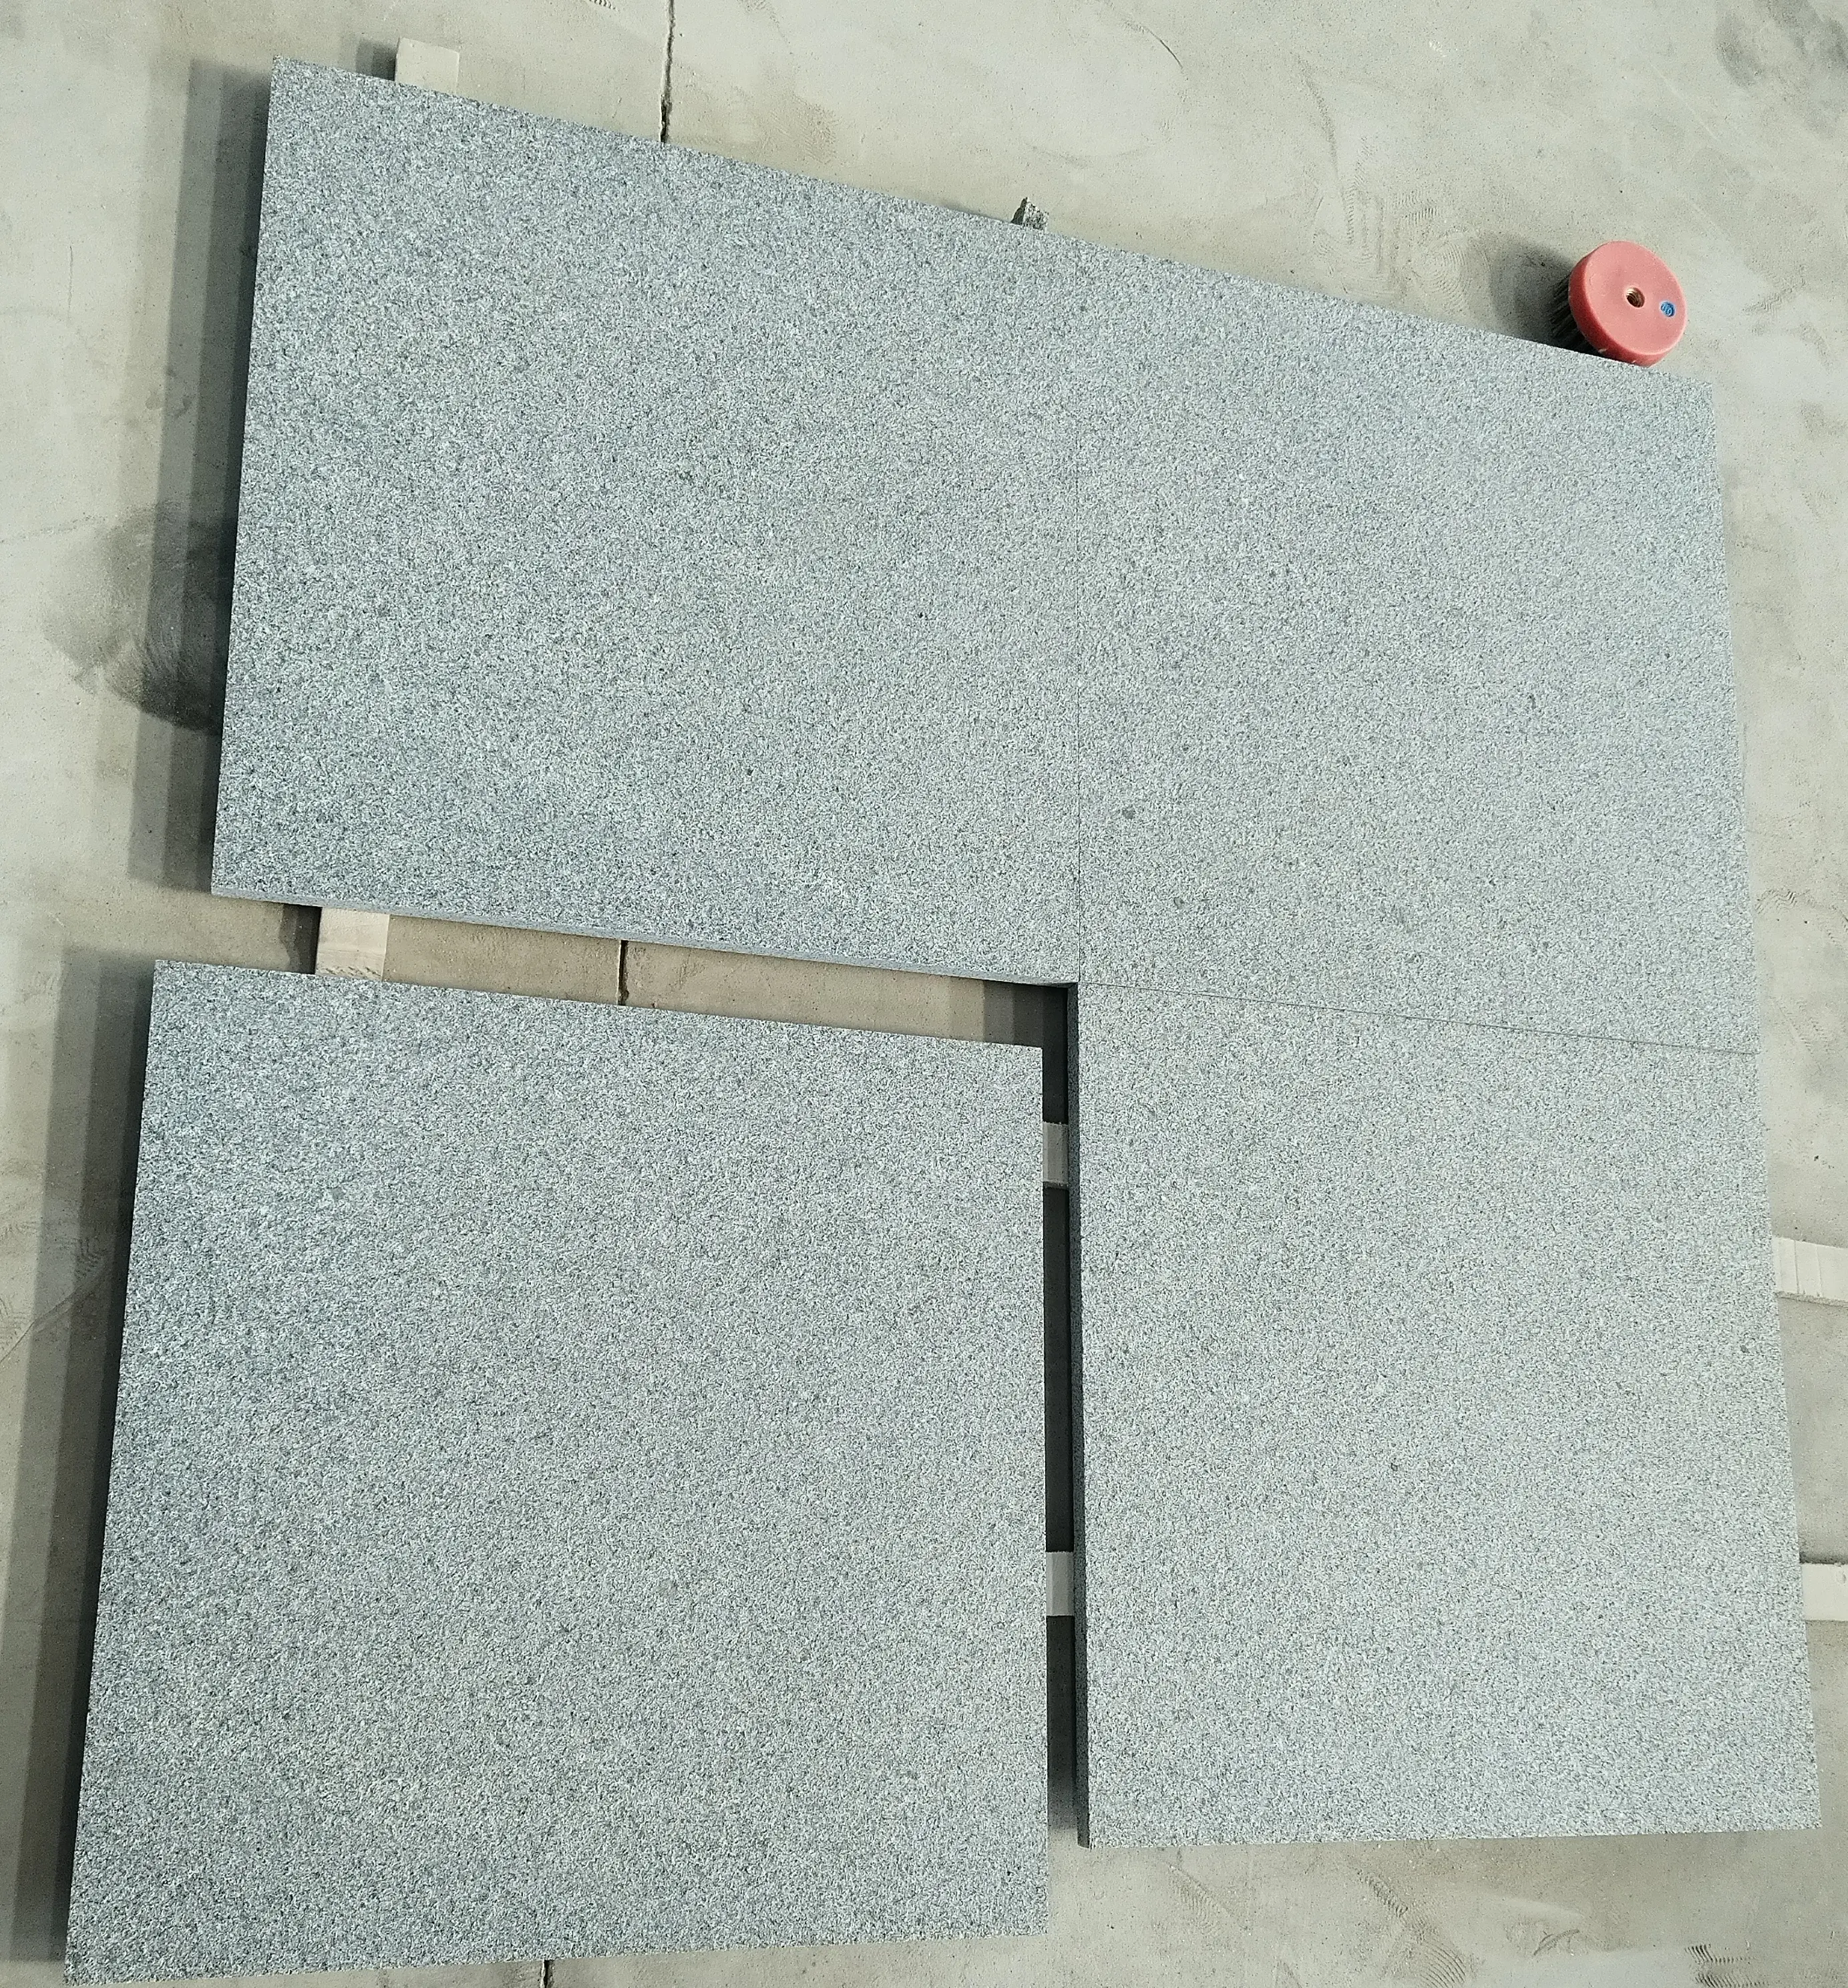 Goldtop OEM/0DM granito batu alam harga pabrik honed G654 60*60MM ukuran ubin granit abu-abu untuk lantai